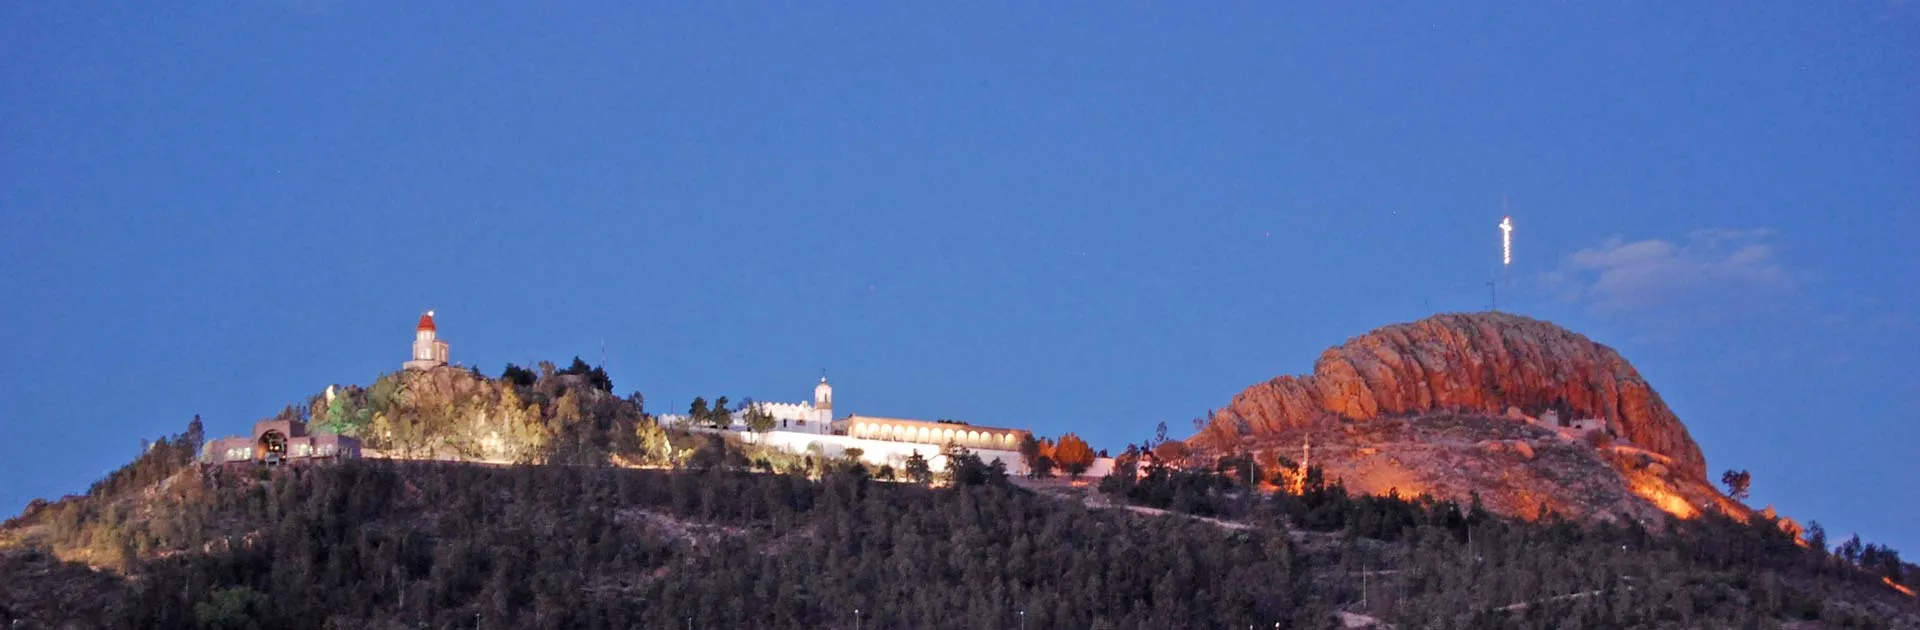 Nota sobre Cerro de la Bufa, mirador natural en Zacatecas